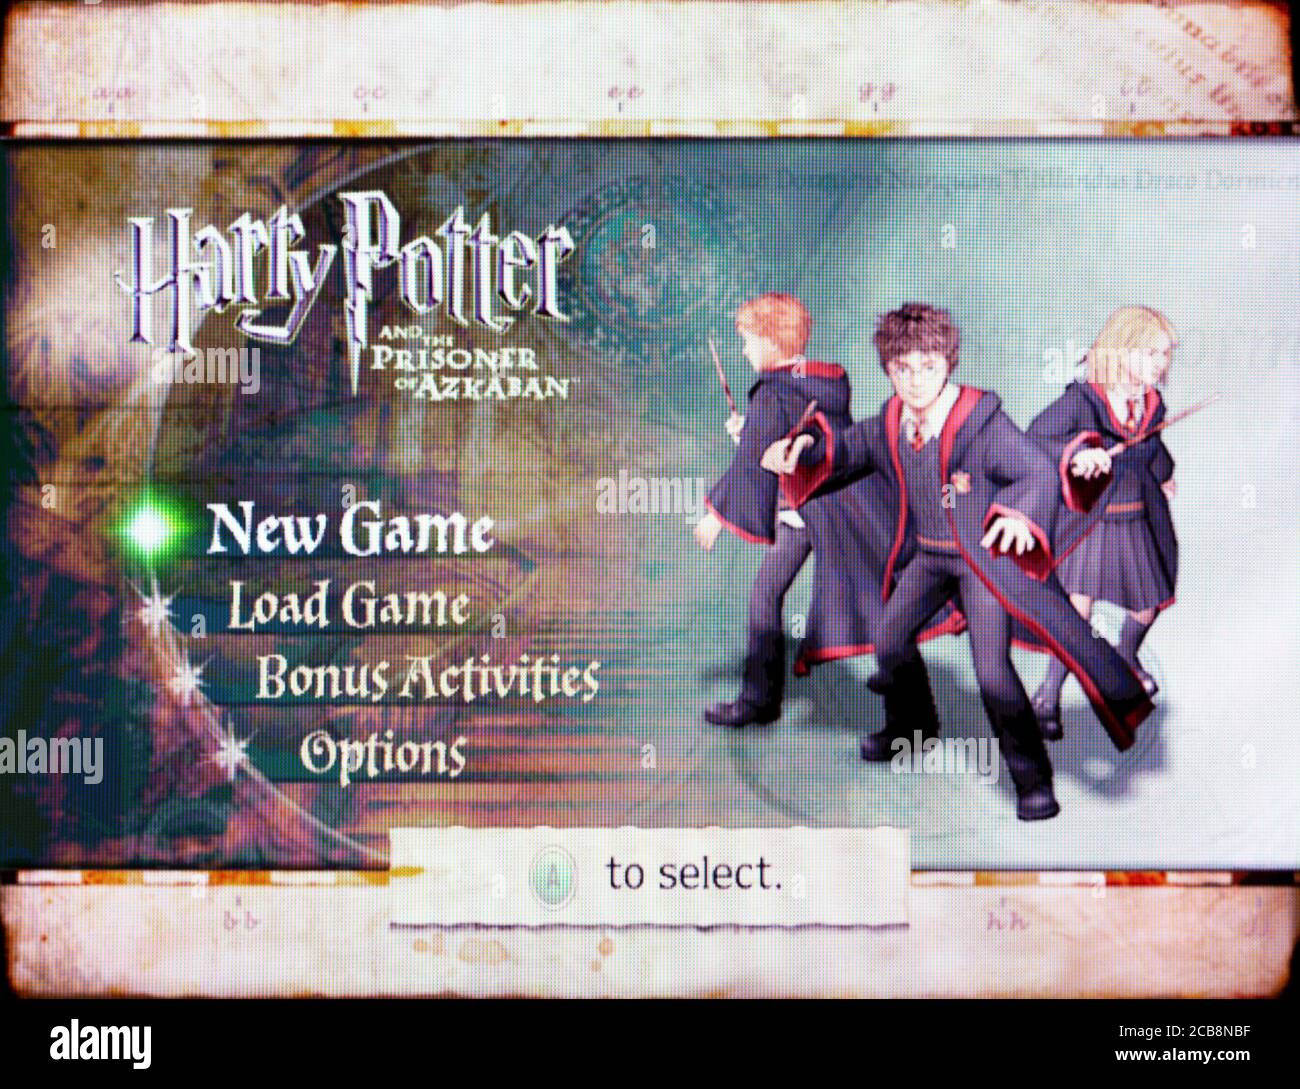 Harry Potter y el prisionero de Azkaban - Nintendo Gamecube Videojuego - sólo para uso editorial Foto de stock